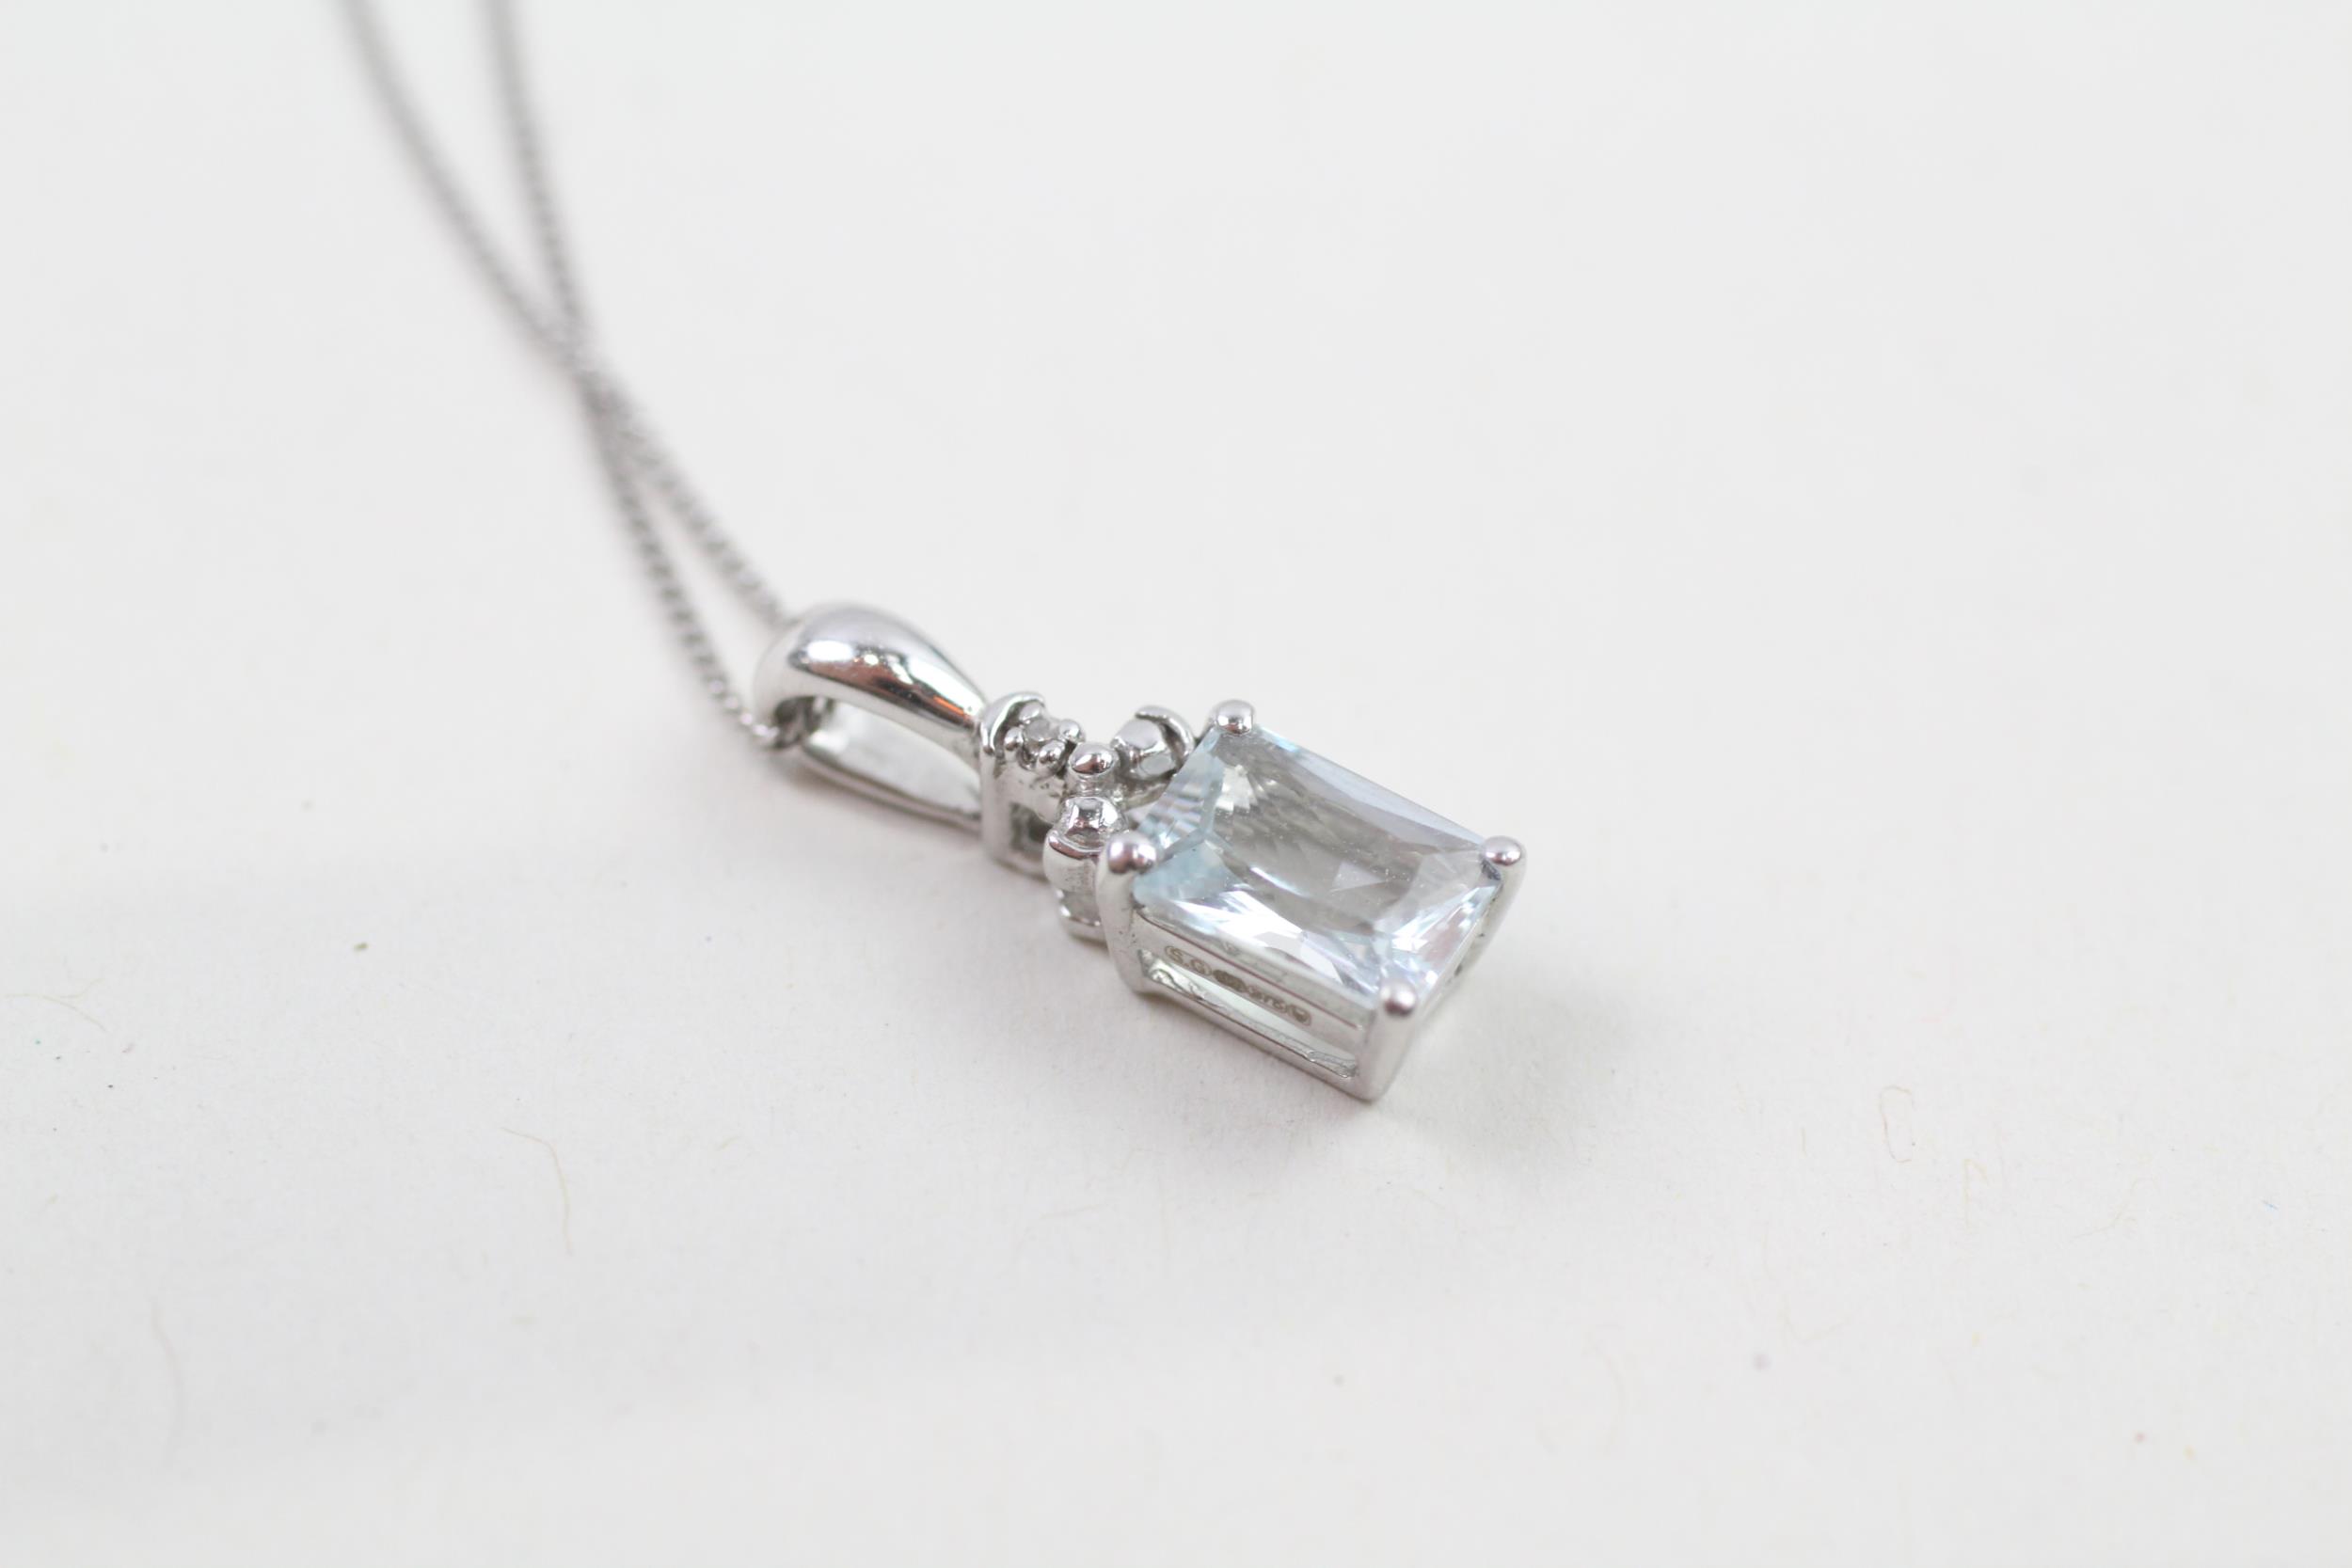 9ct white gold diamond & aquamarine pendant necklace (1.7g) - Image 2 of 4